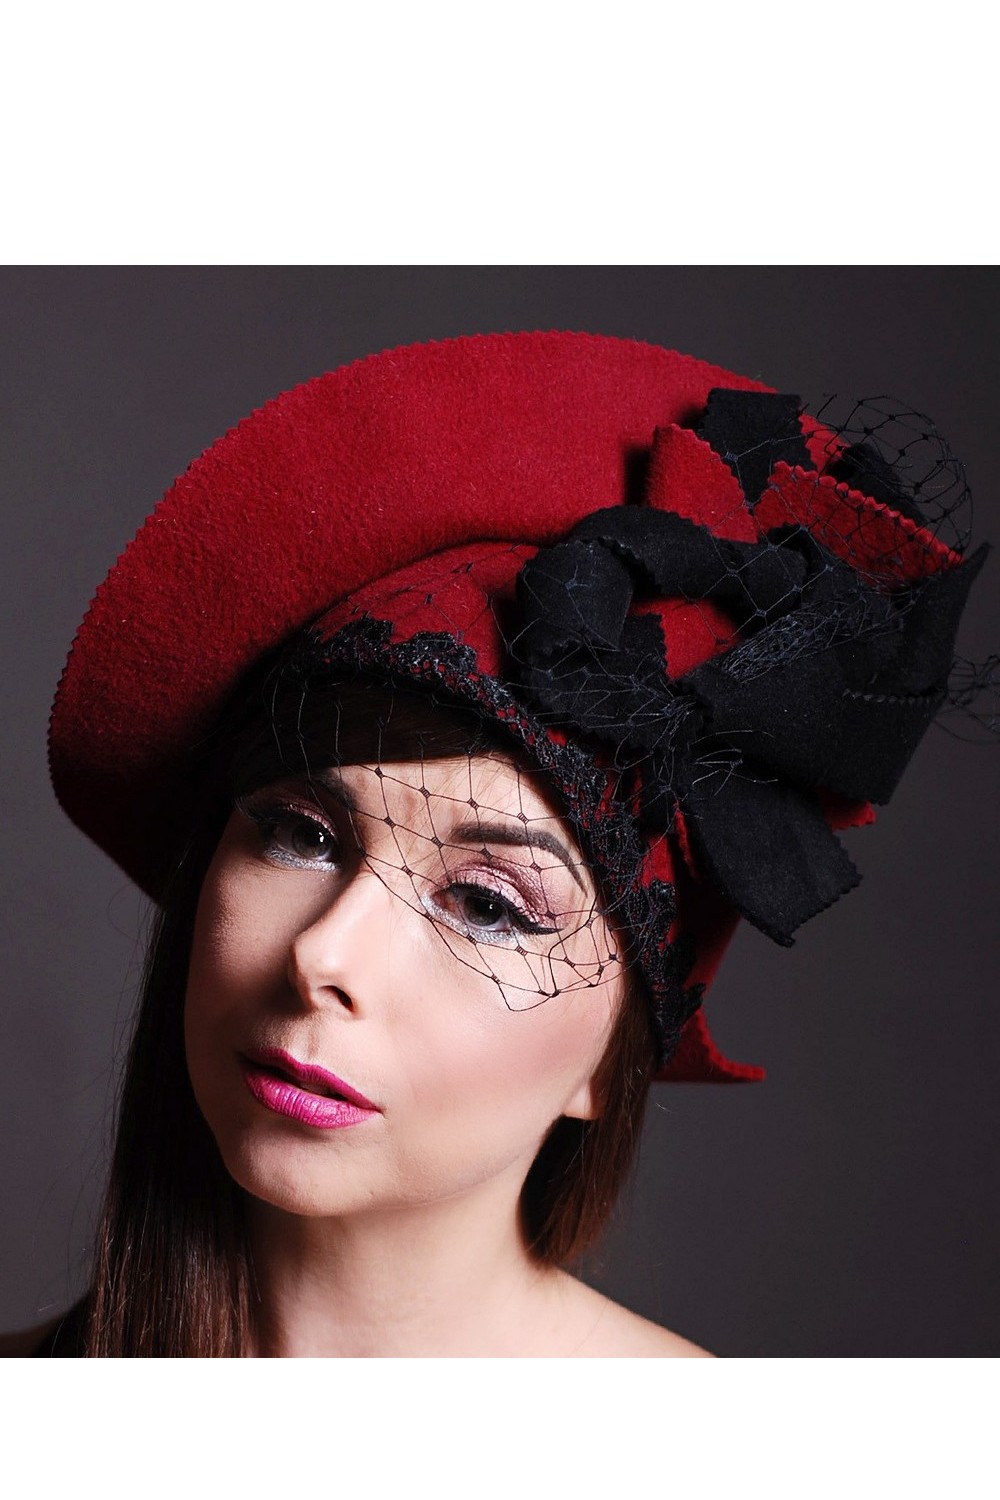 Buy Red classic women's felt veil retro style hat, Unique designer hat